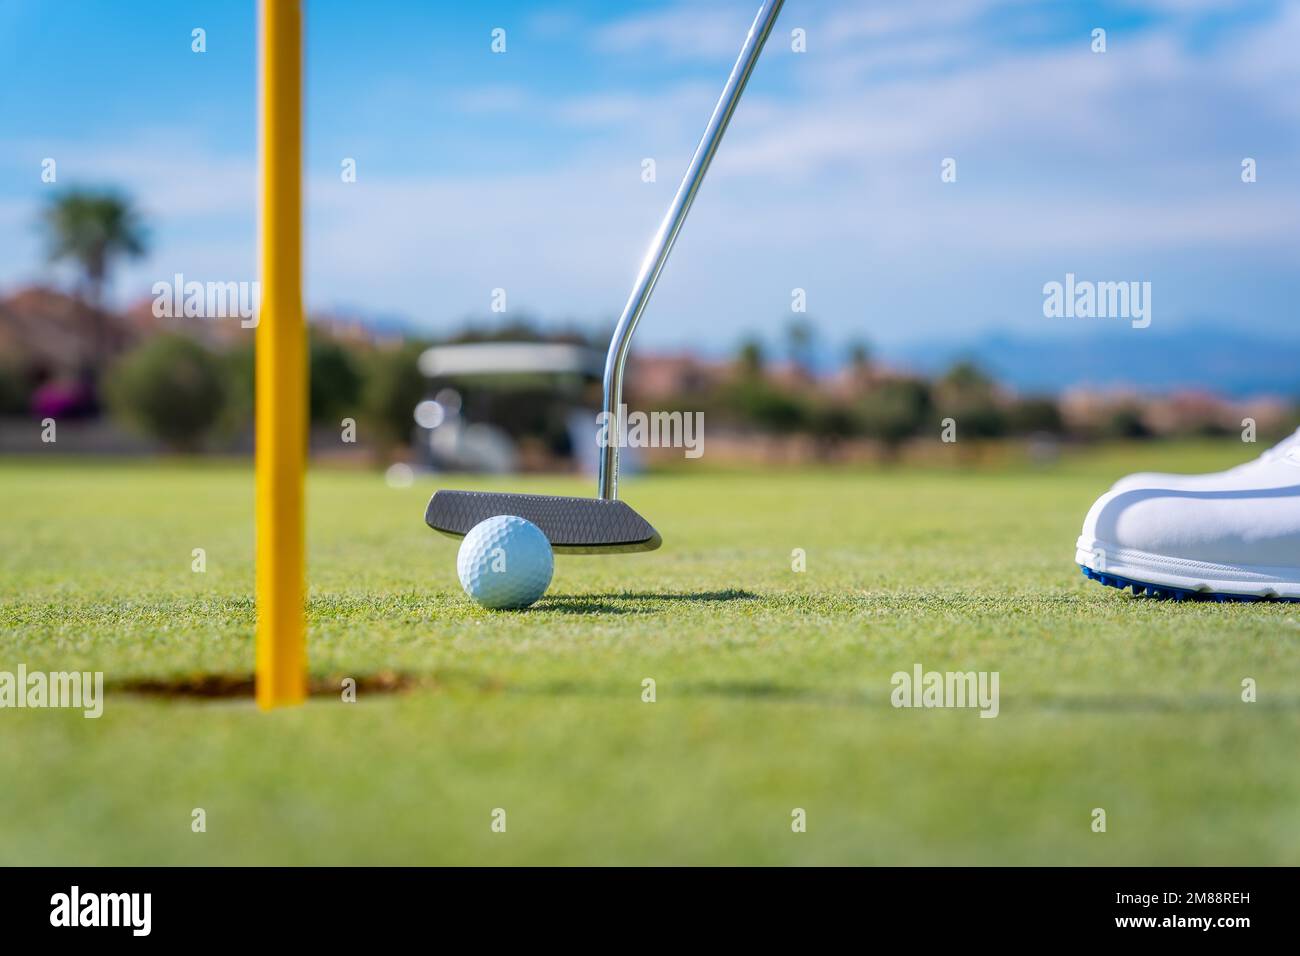 Dettaglio di un uomo che gioca a golf, mettendo la palla nel buco sul verde con il putter Foto Stock